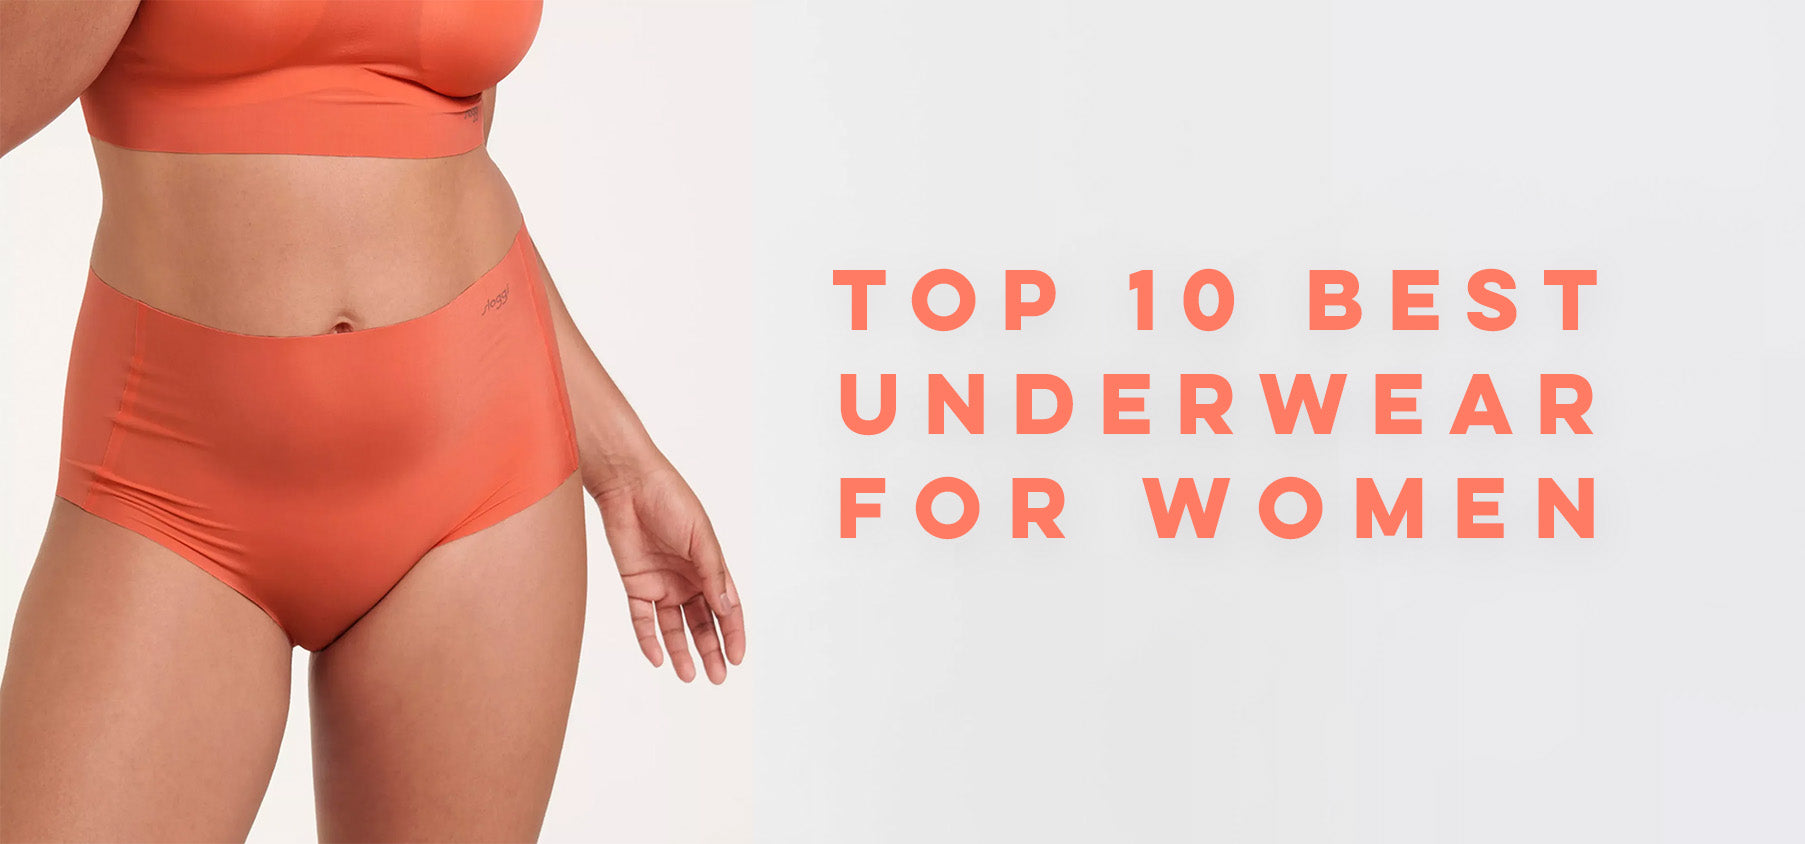 The best materials for underwear and sleepwear